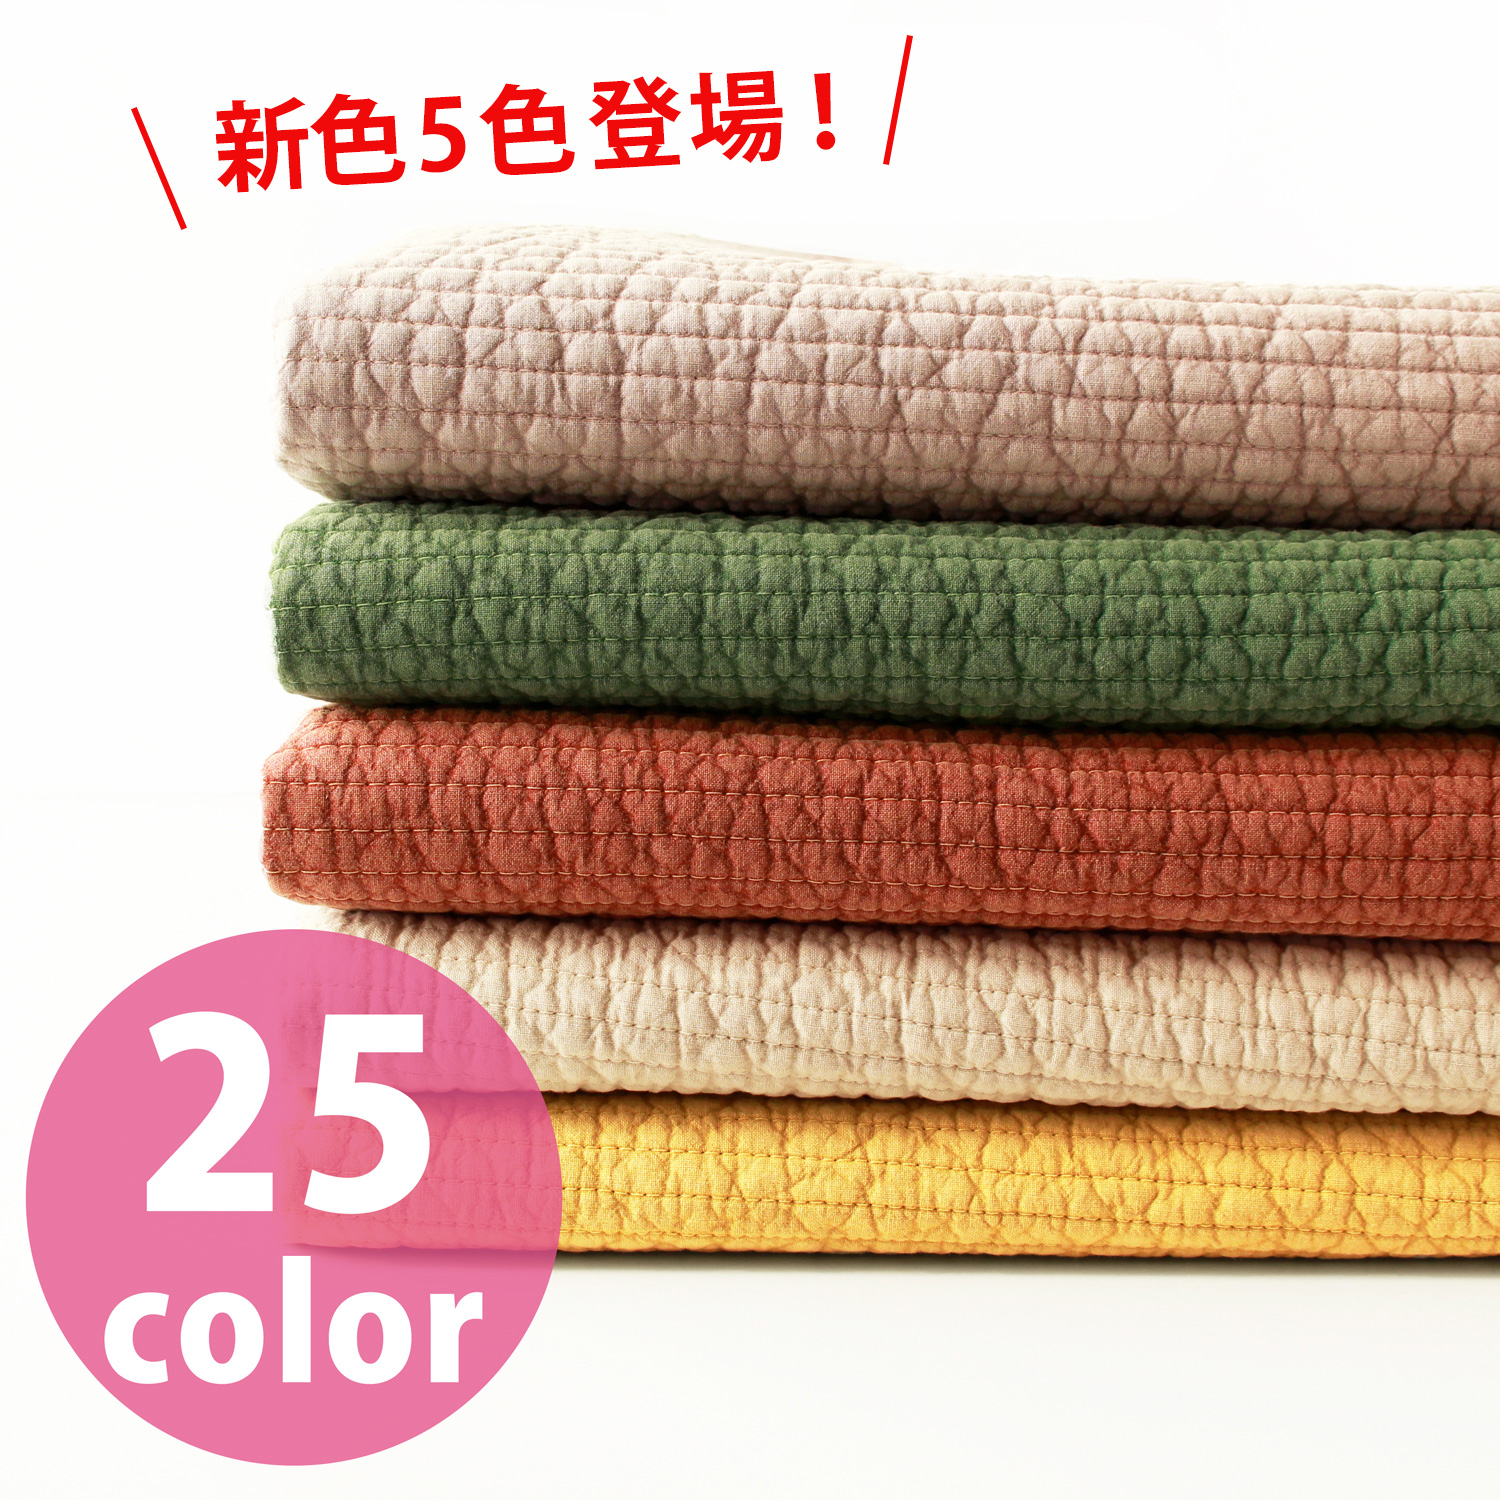 ■NBY307R nubi ヌビ 韓国伝統キルティング生地 巾7mmサイズ 約8m巻 (巻) 0